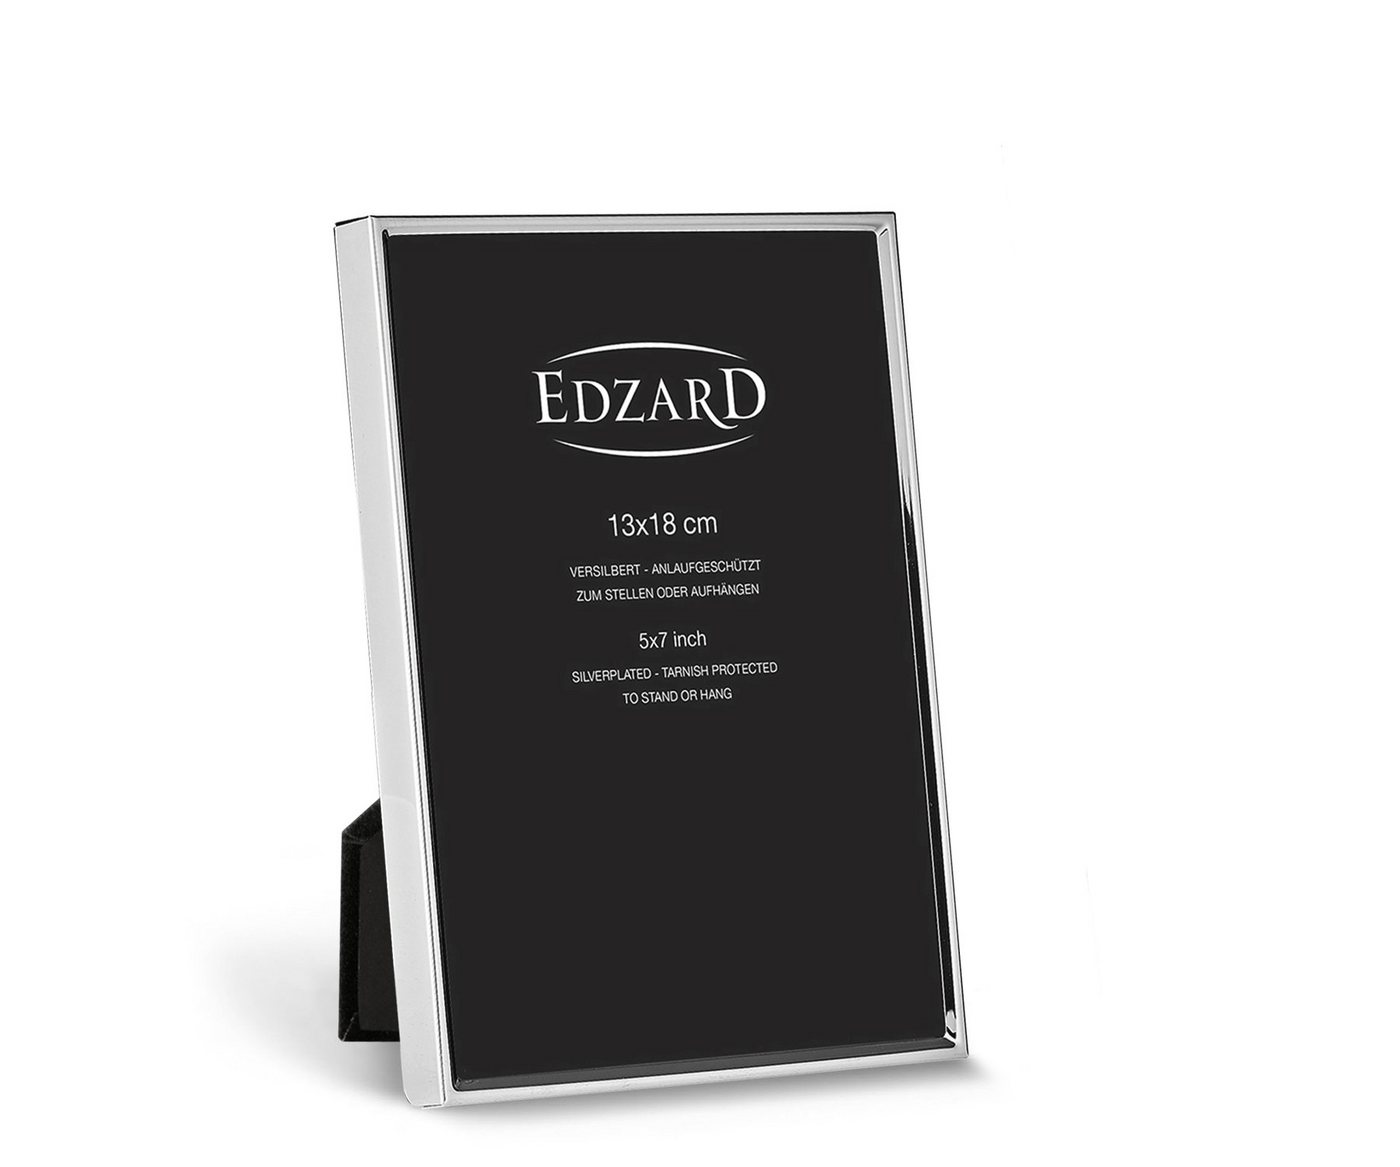 EDZARD Bilderrahmen Otto, versilbert und anlaufgeschützt, für 13x18 cm Foto von EDZARD